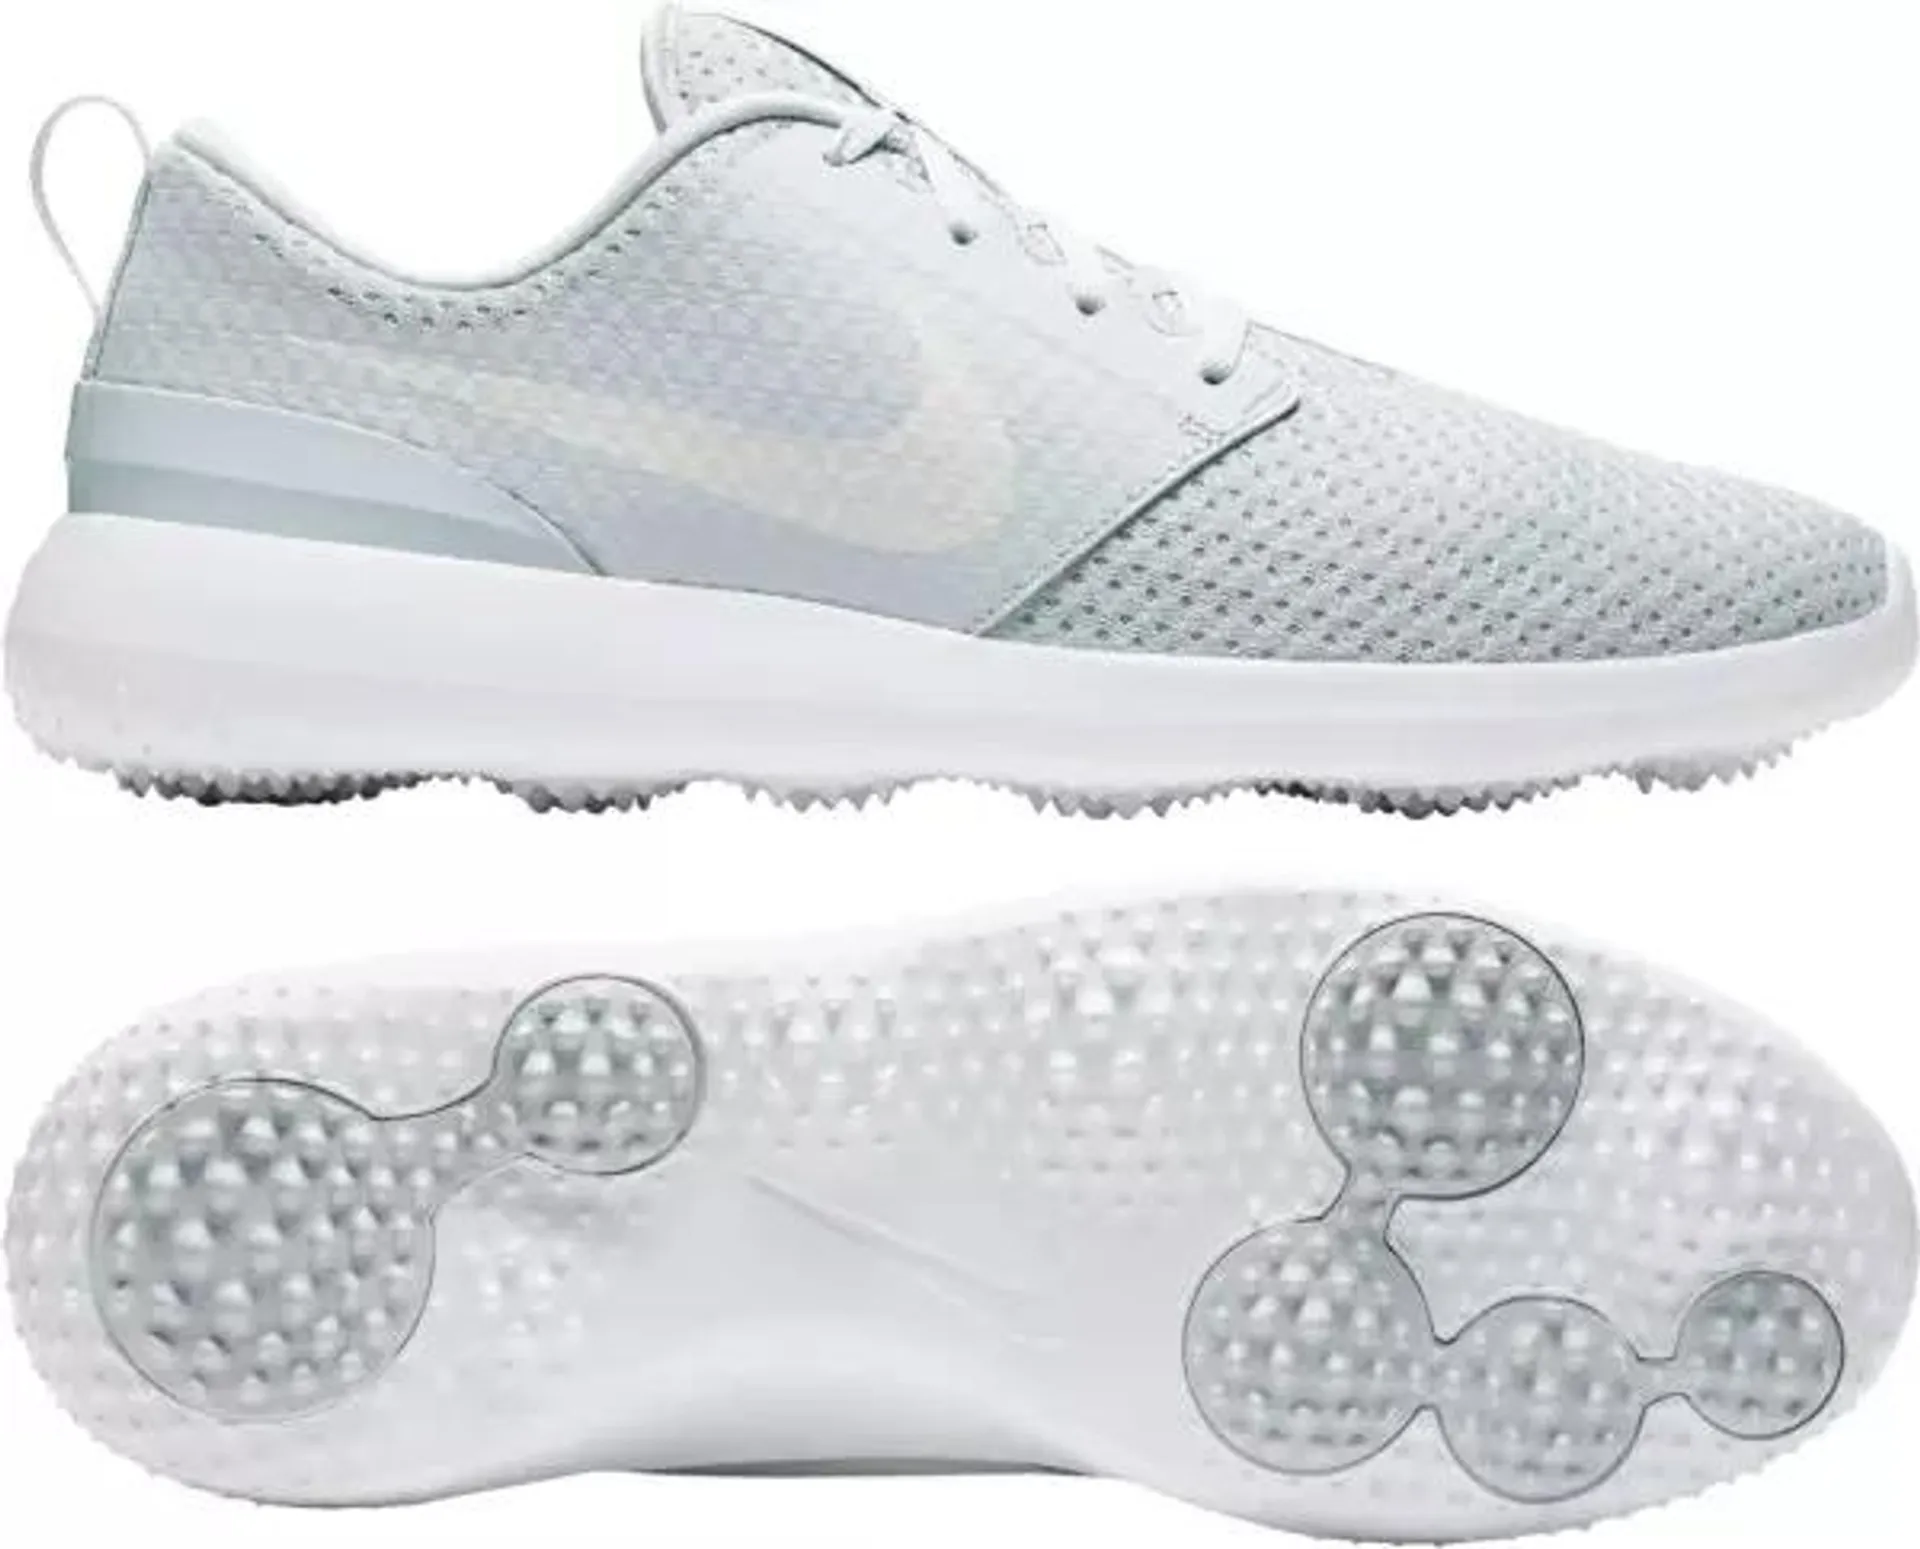 Nike Men's 2021 Roshe G Golf Shoes